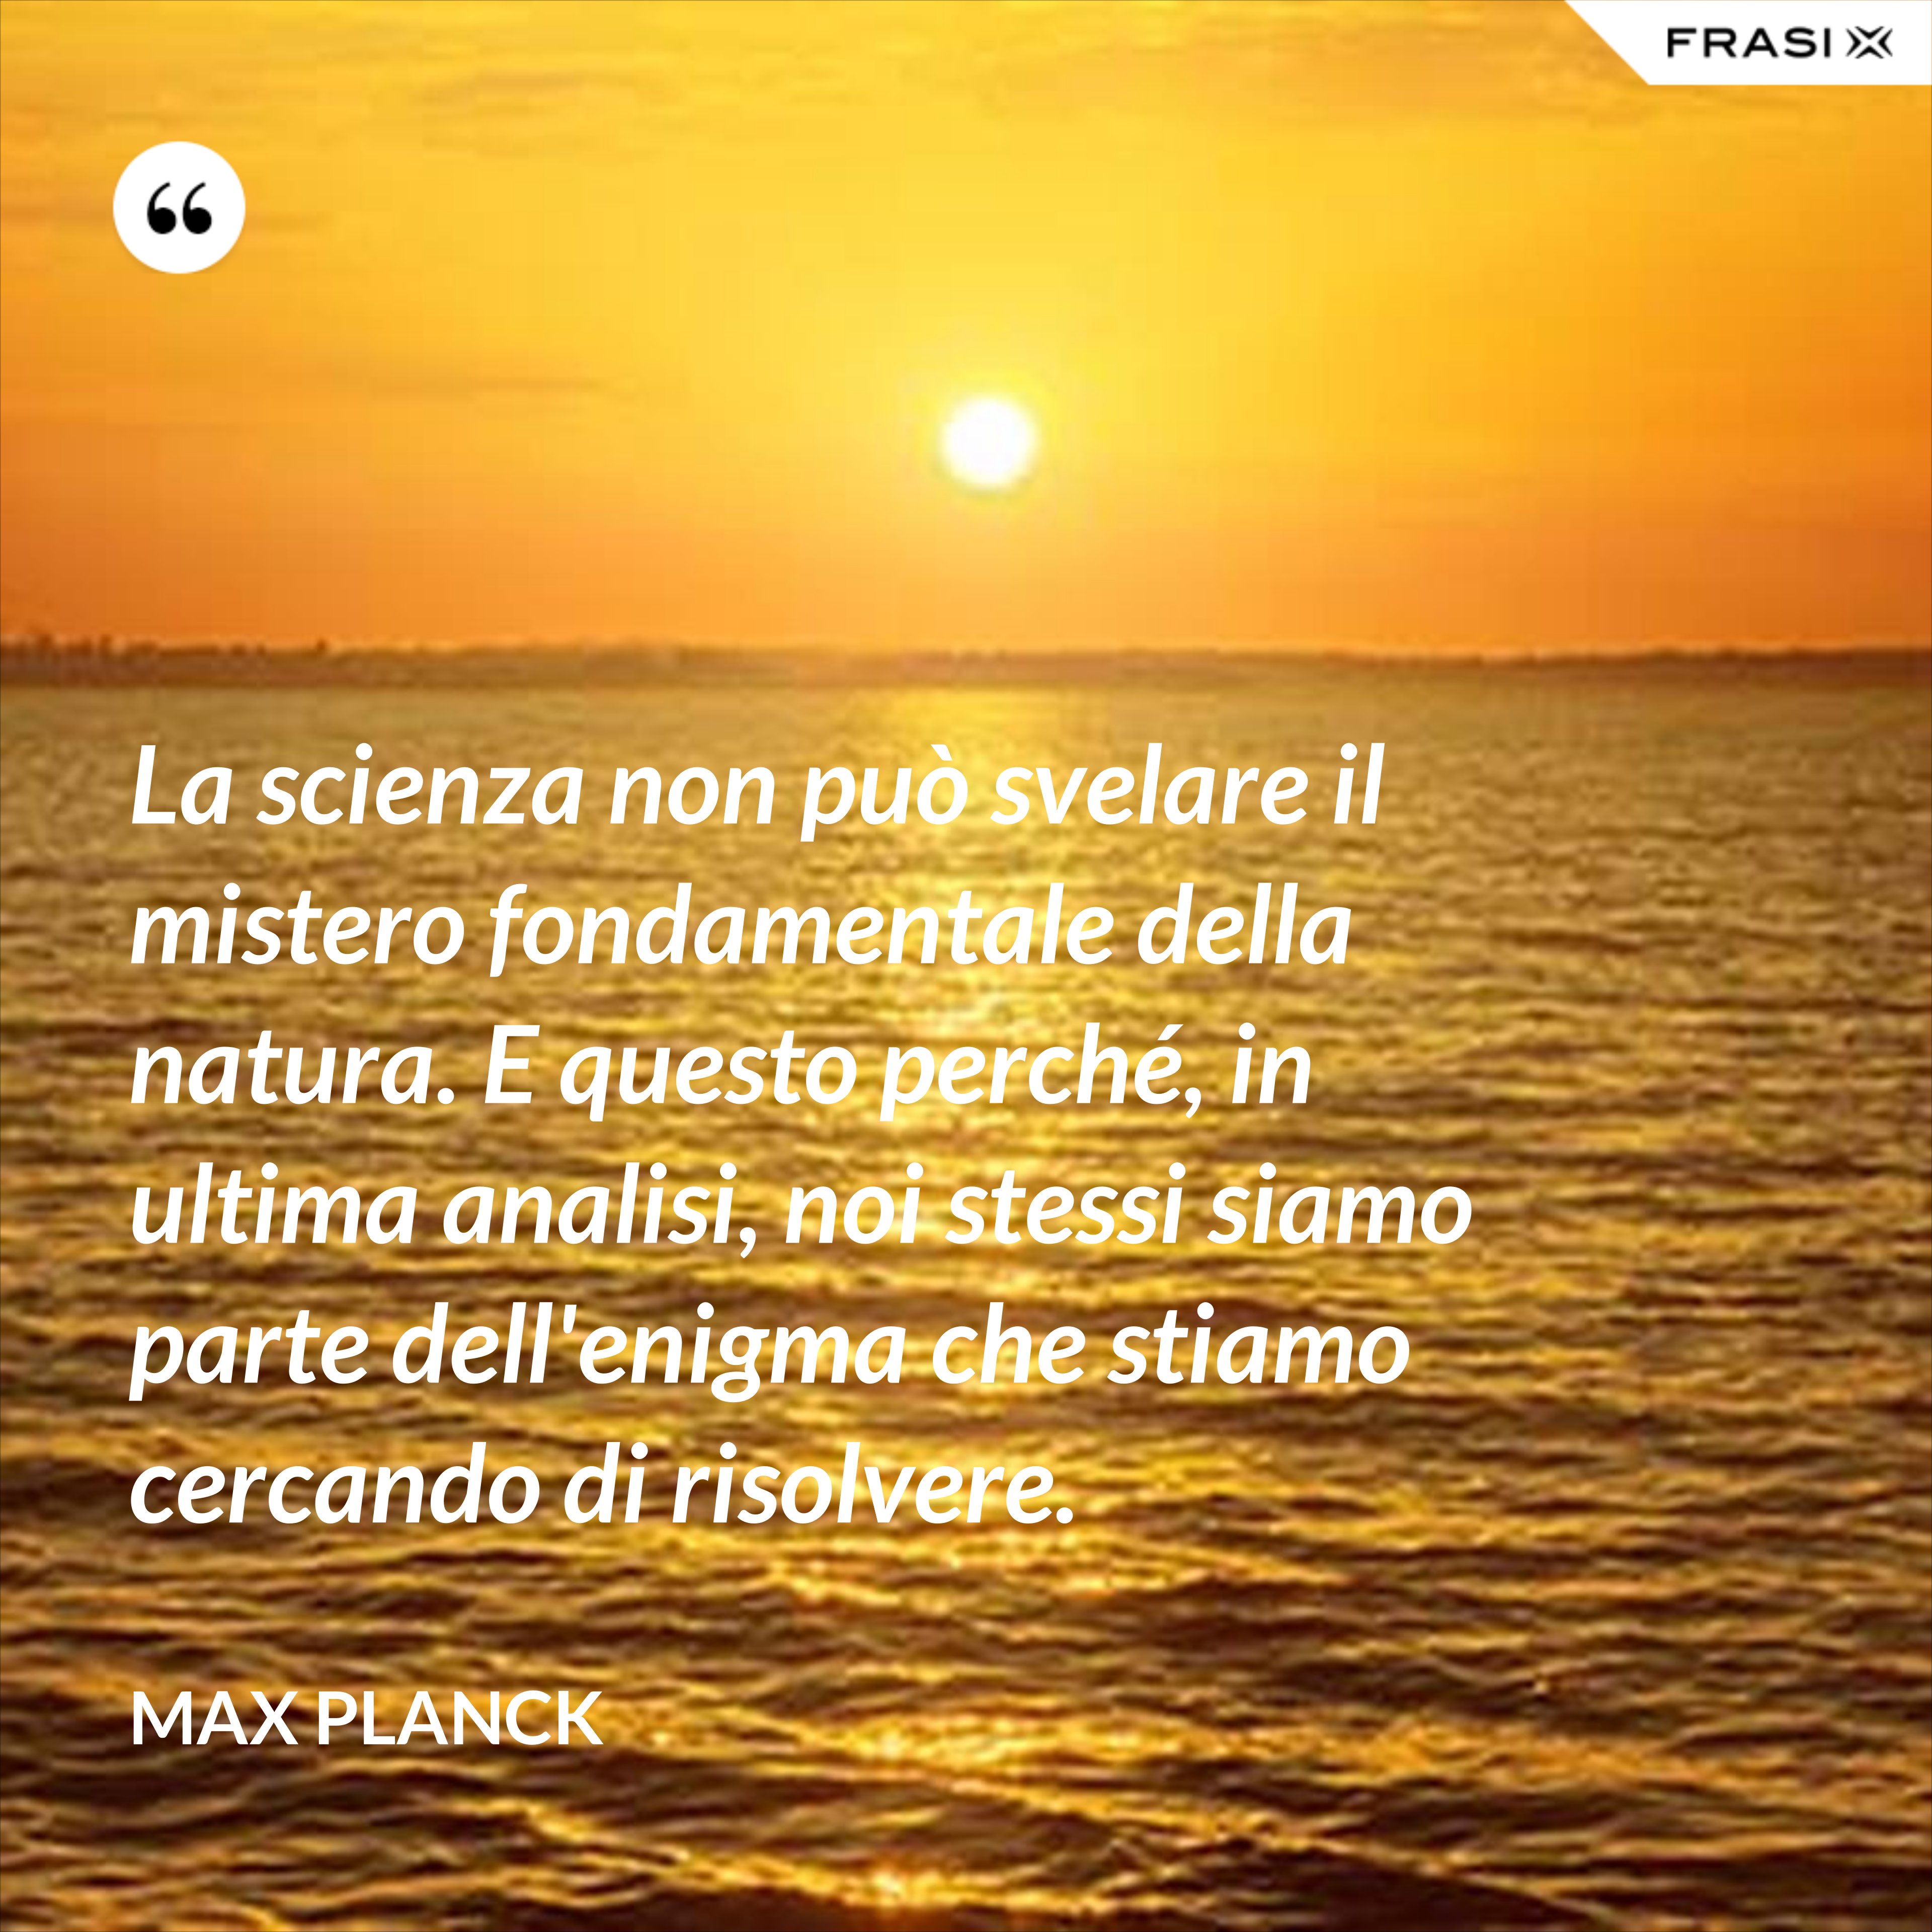 La scienza non può svelare il mistero fondamentale della natura. E questo perché, in ultima analisi, noi stessi siamo parte dell'enigma che stiamo cercando di risolvere. - Max Planck